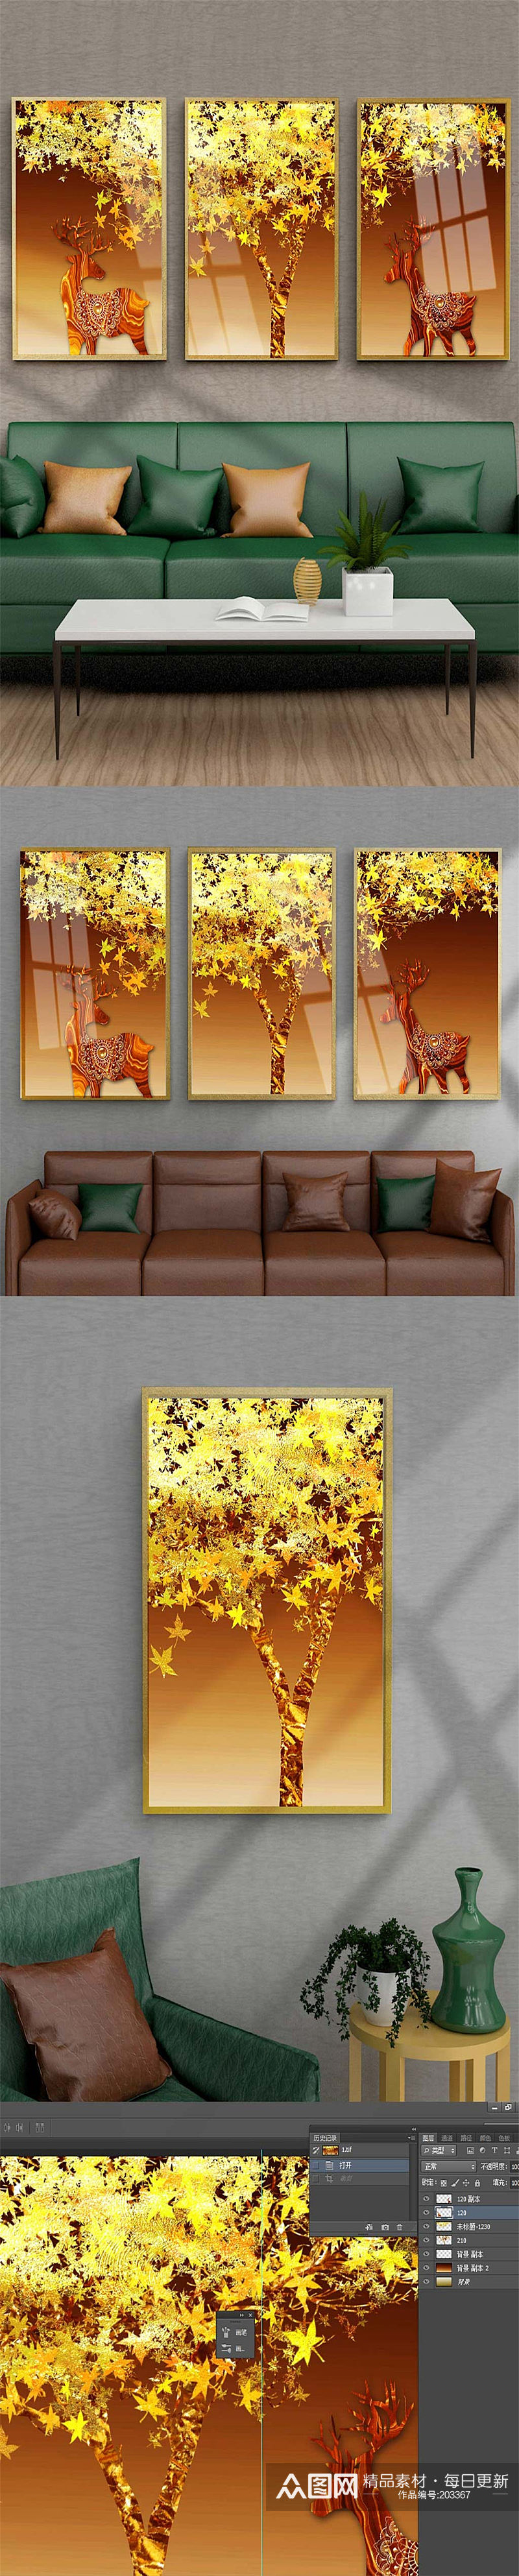 金箔枫叶北欧麋鹿装饰画素材